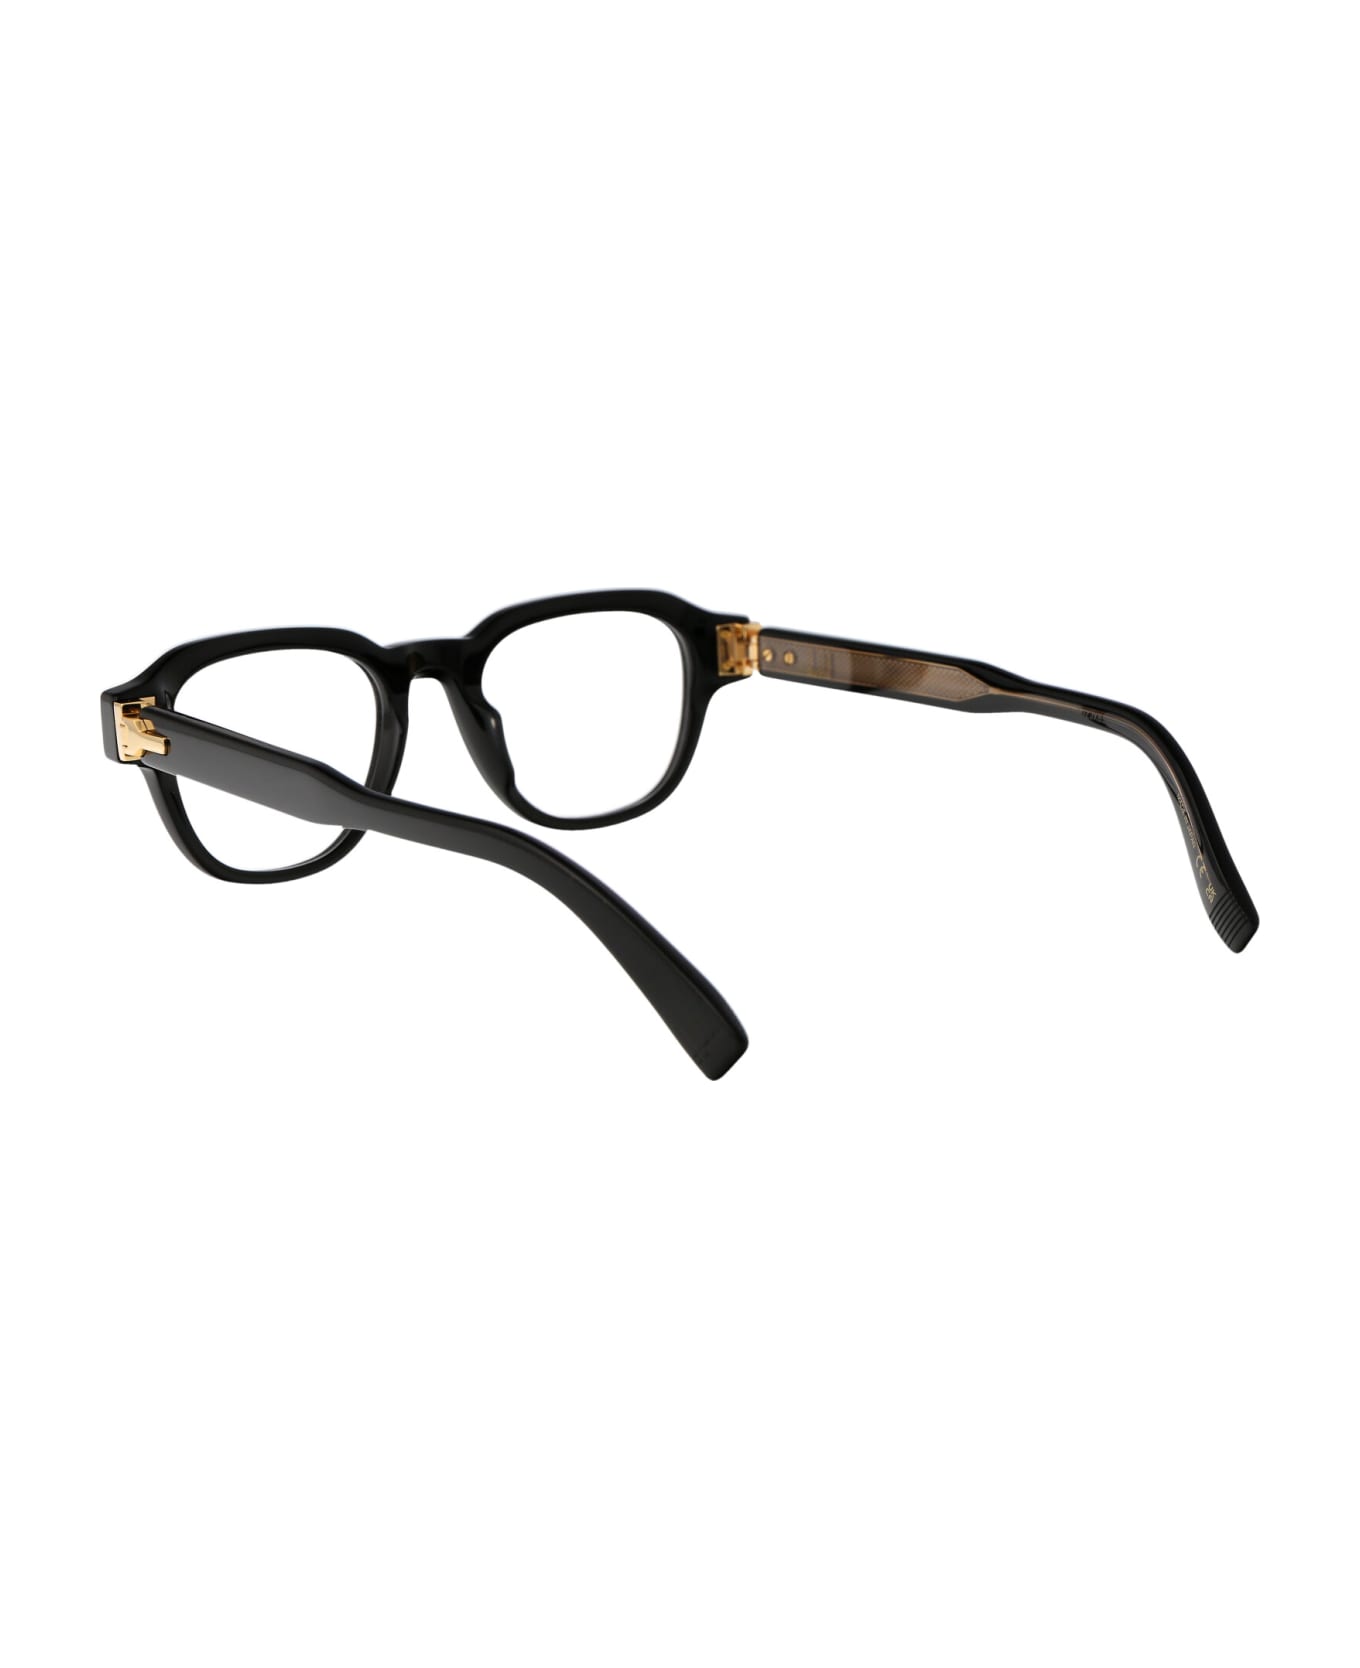 Dunhill Du0048o Glasses - 001 BLACK BLACK TRANSPARENT